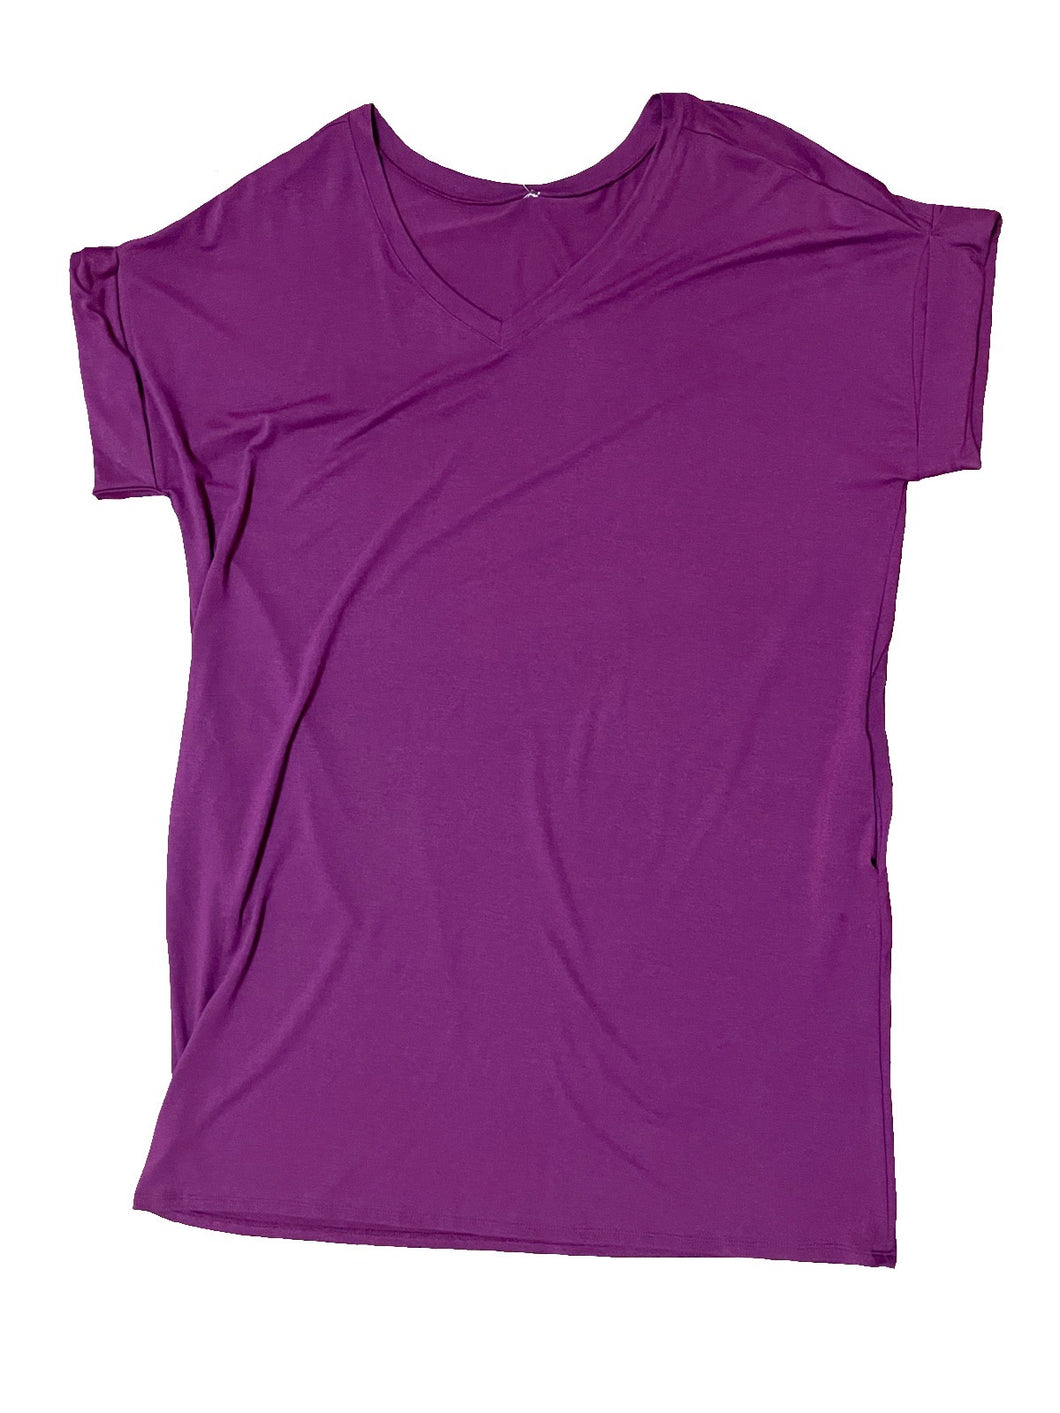 Purple V-Neck T-Shirt Dress